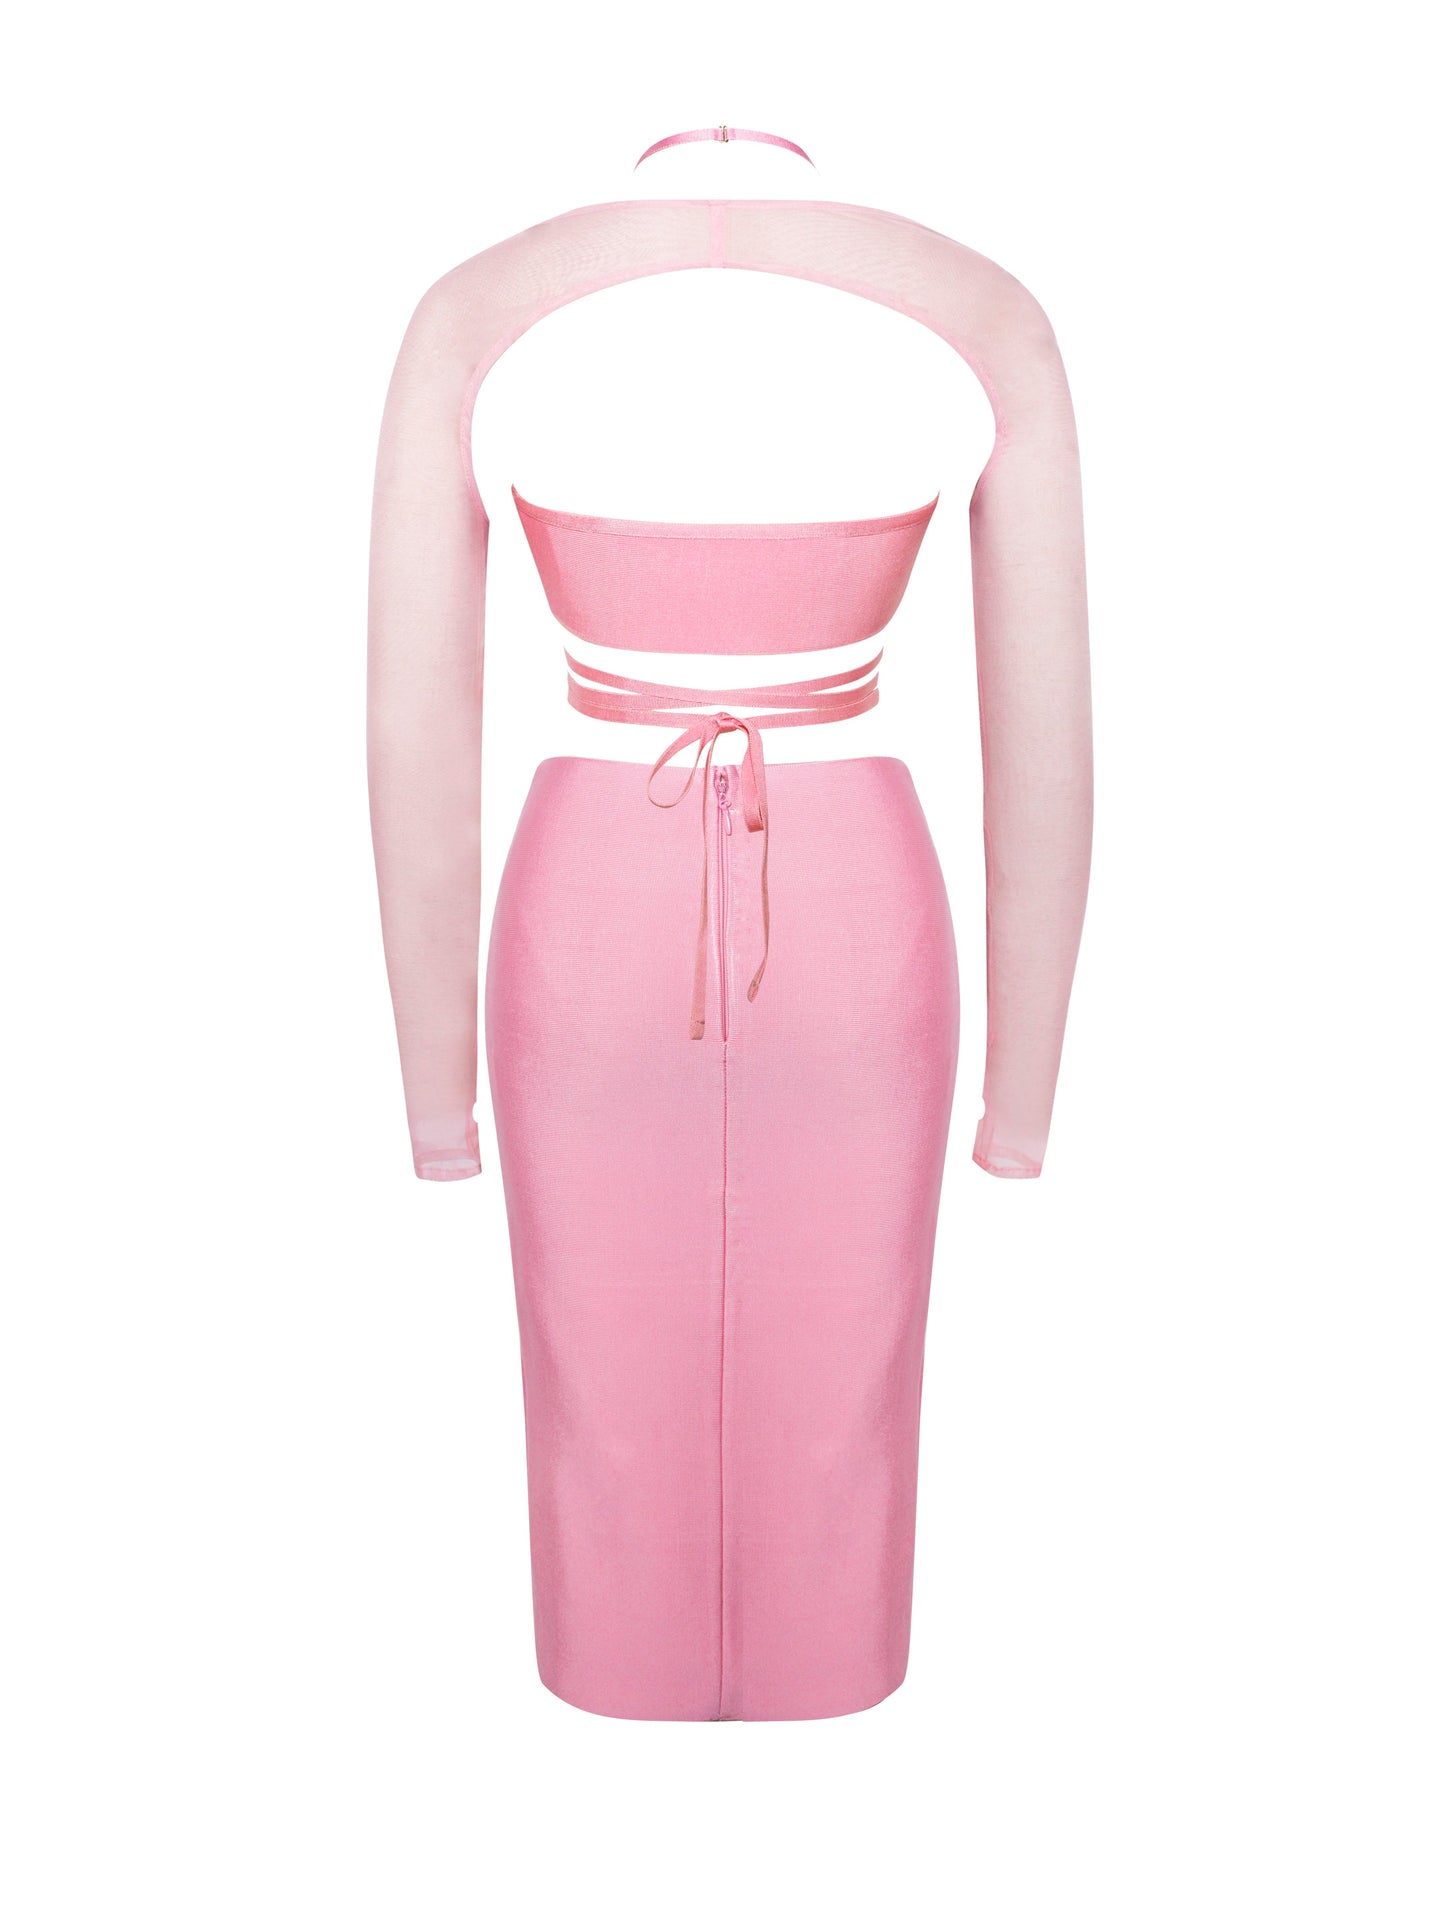 Bellozi™ Pink Lace Up Dress